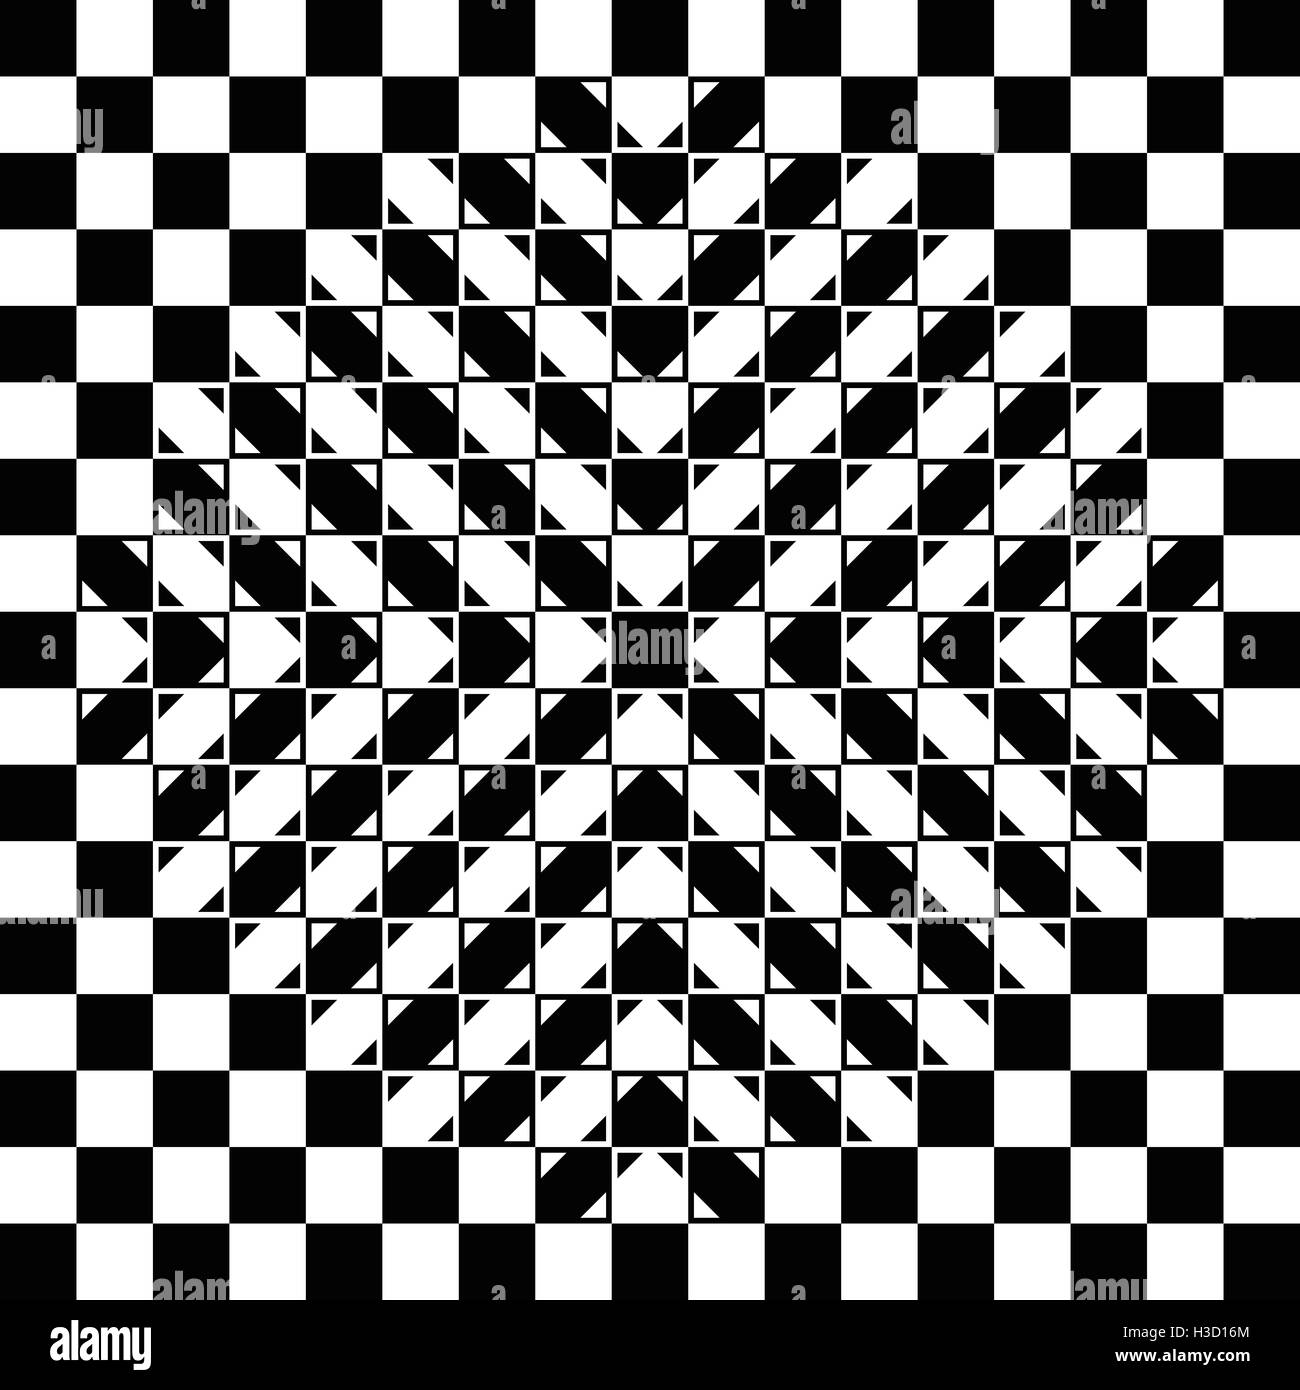 Saltones ilusión de tablero de ajedrez. El tablero de ajedrez es totalmente normal, cada casilla es una plaza regular y el abultamiento es una ilusión. Foto de stock